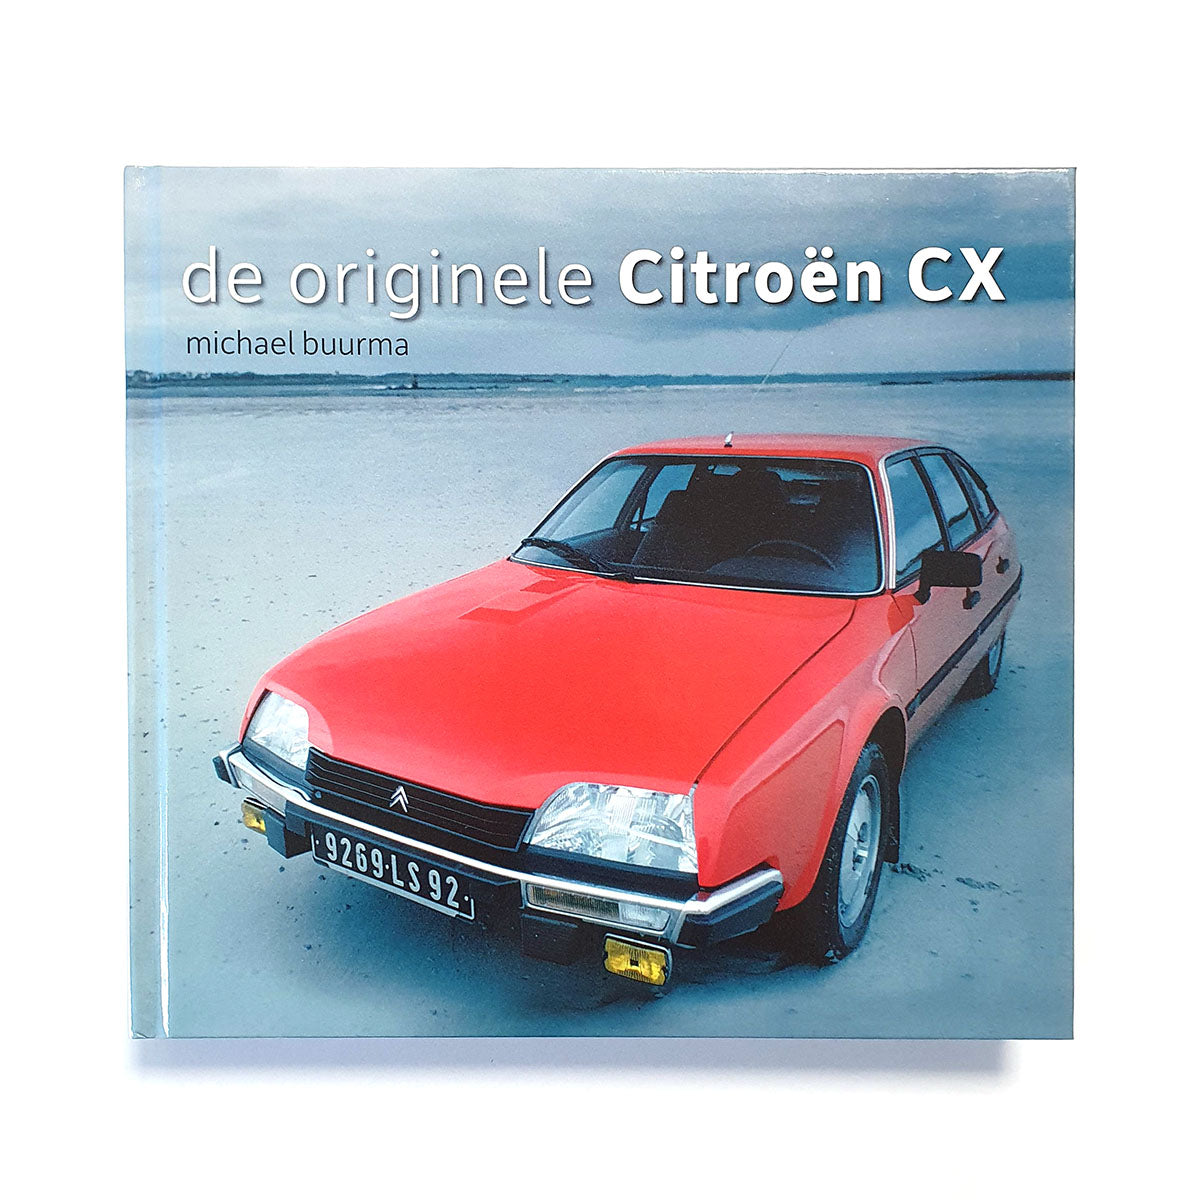 De originele Citroën CX (NL)